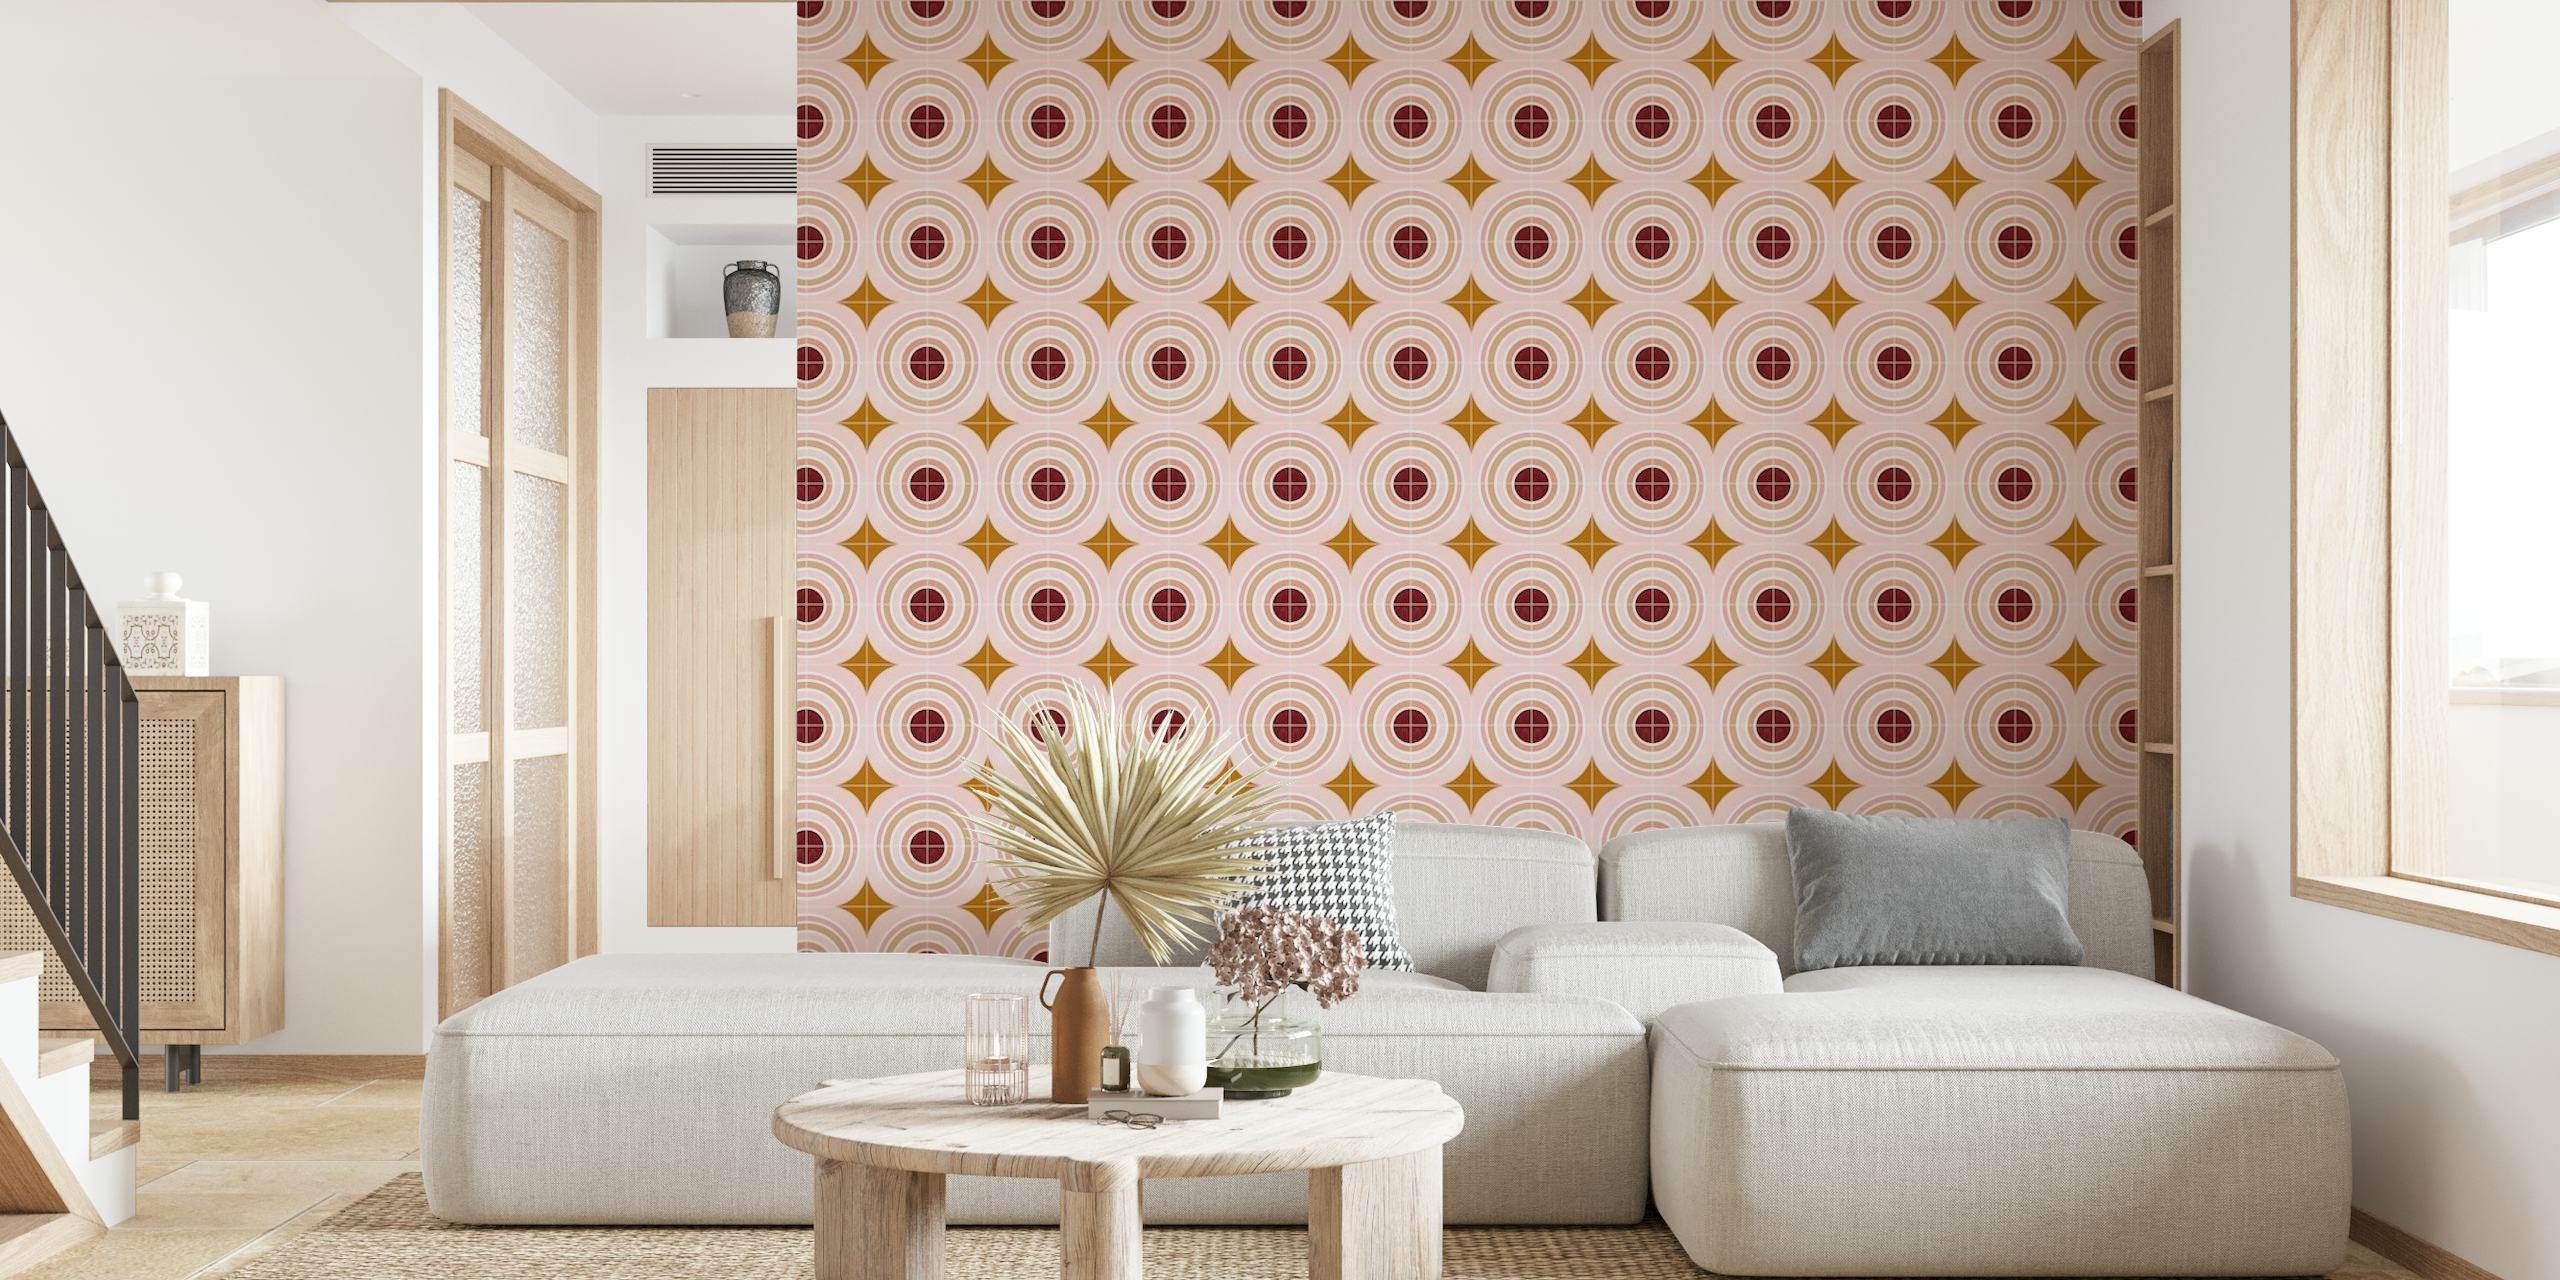 Target Tiles Wandbild mit konzentrischen Kreismustern in sanften Rosa- und Goldtönen